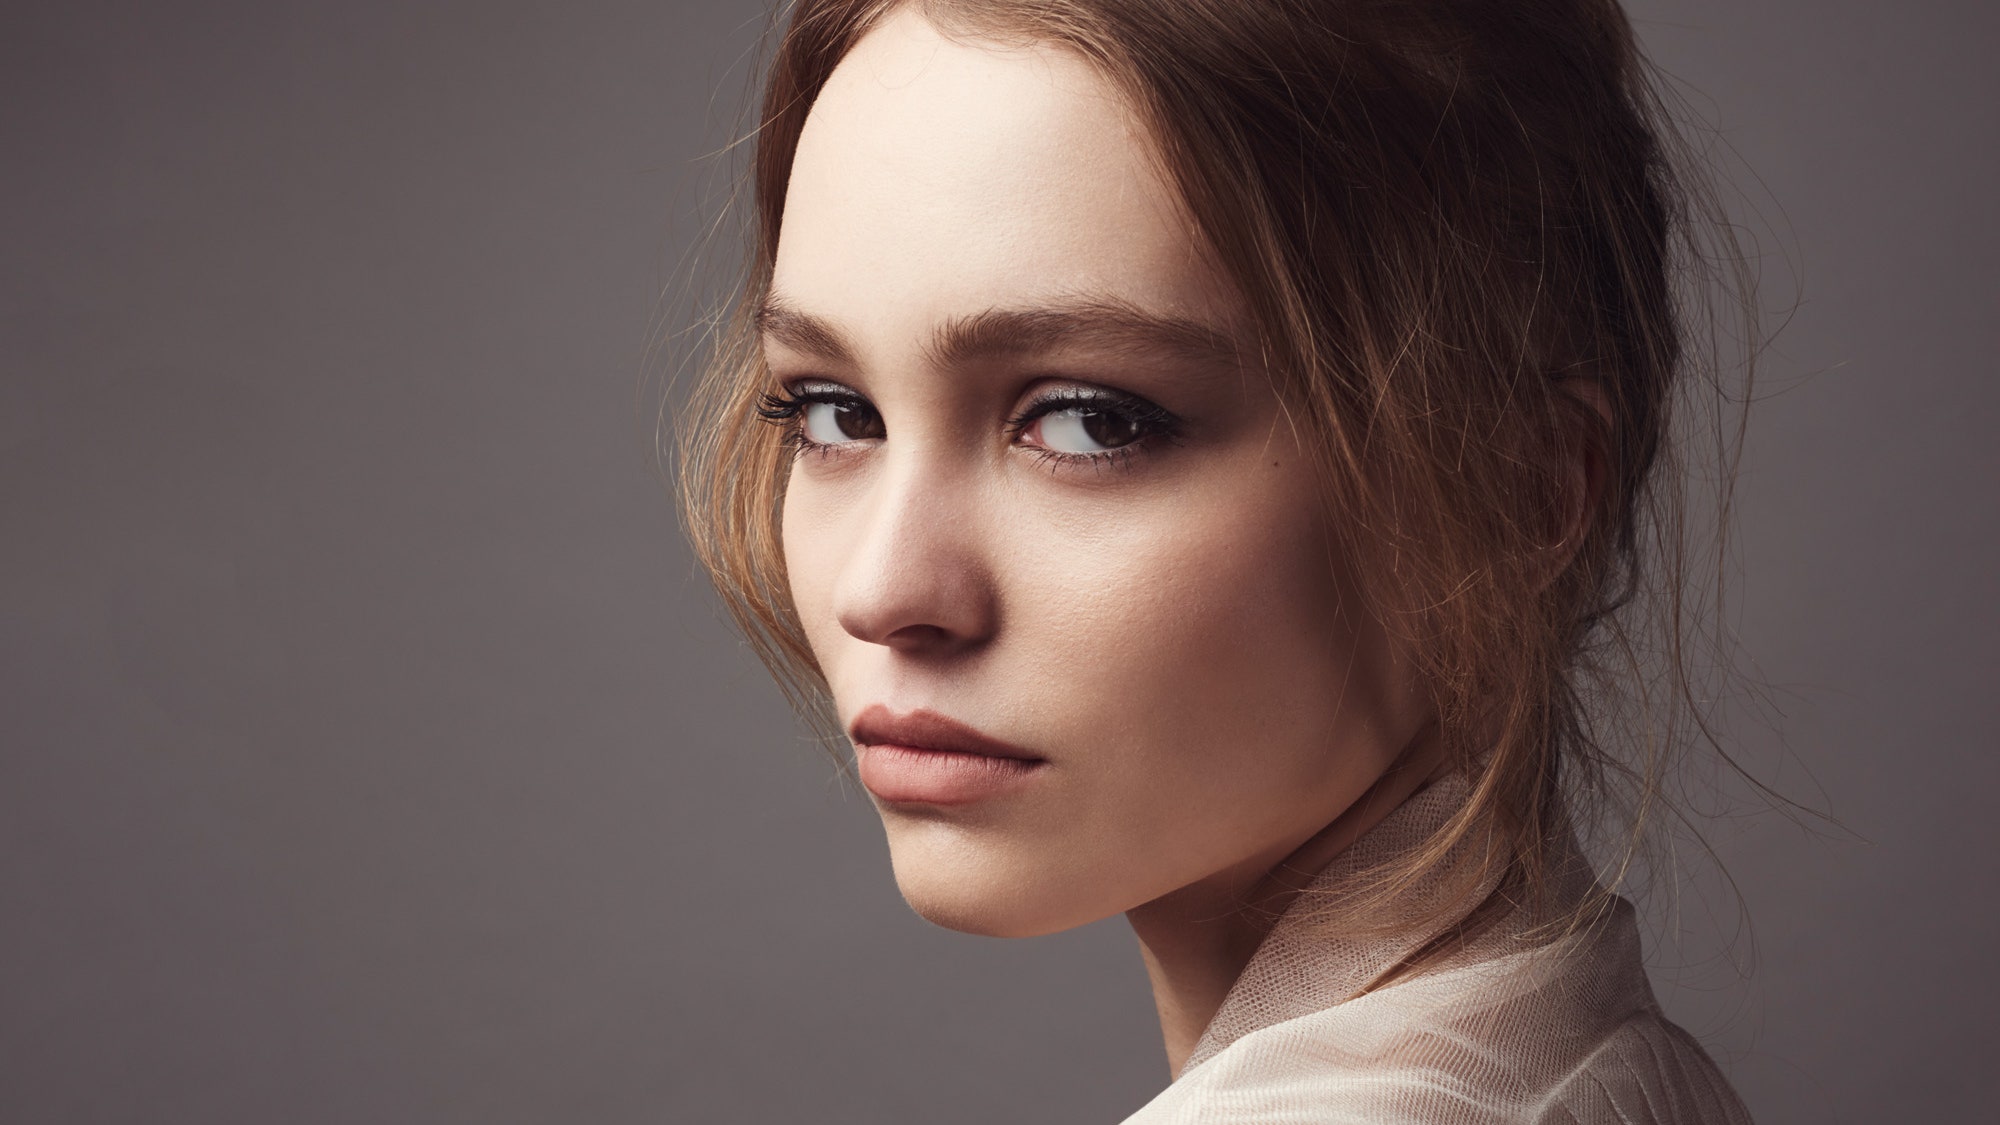 ЛилиРоуз Депп  новое лицо Chanel Nº 5 фото и тизер из рекламной кампании | Allure